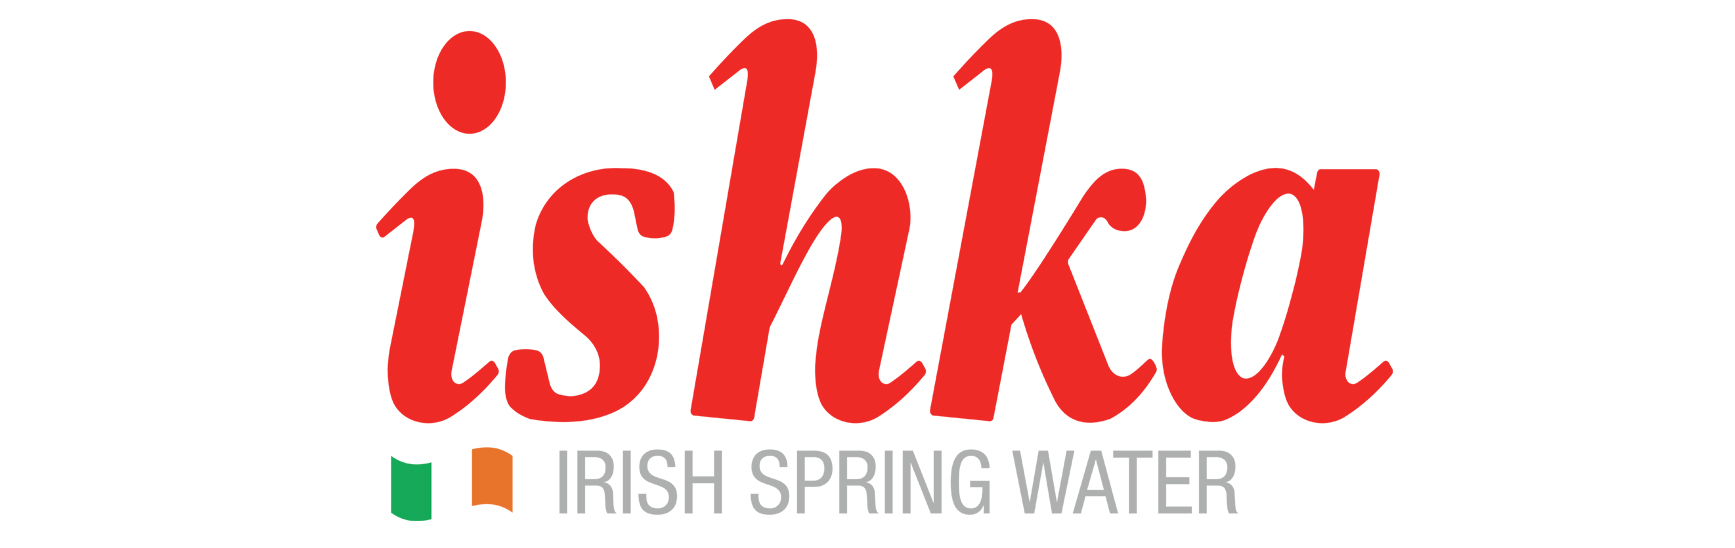 Ishka Logo 2022